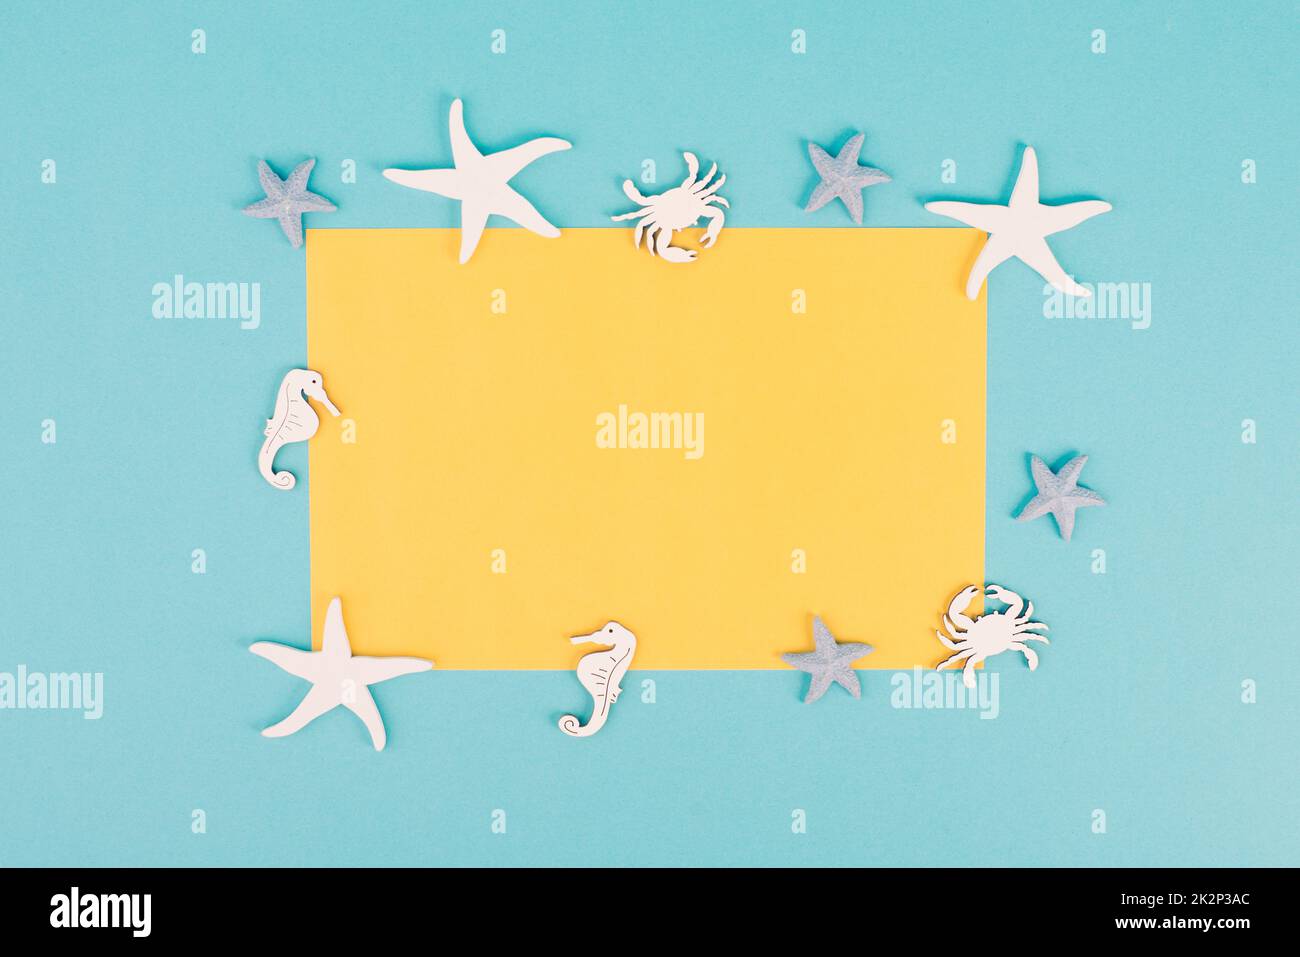 Carta vuota di colore giallo, stelle marine, cavallucci marini e granchio che proiettano una cornice, vacanze estive, destinazione turistica di viaggio, copia spazio per il testo Foto Stock